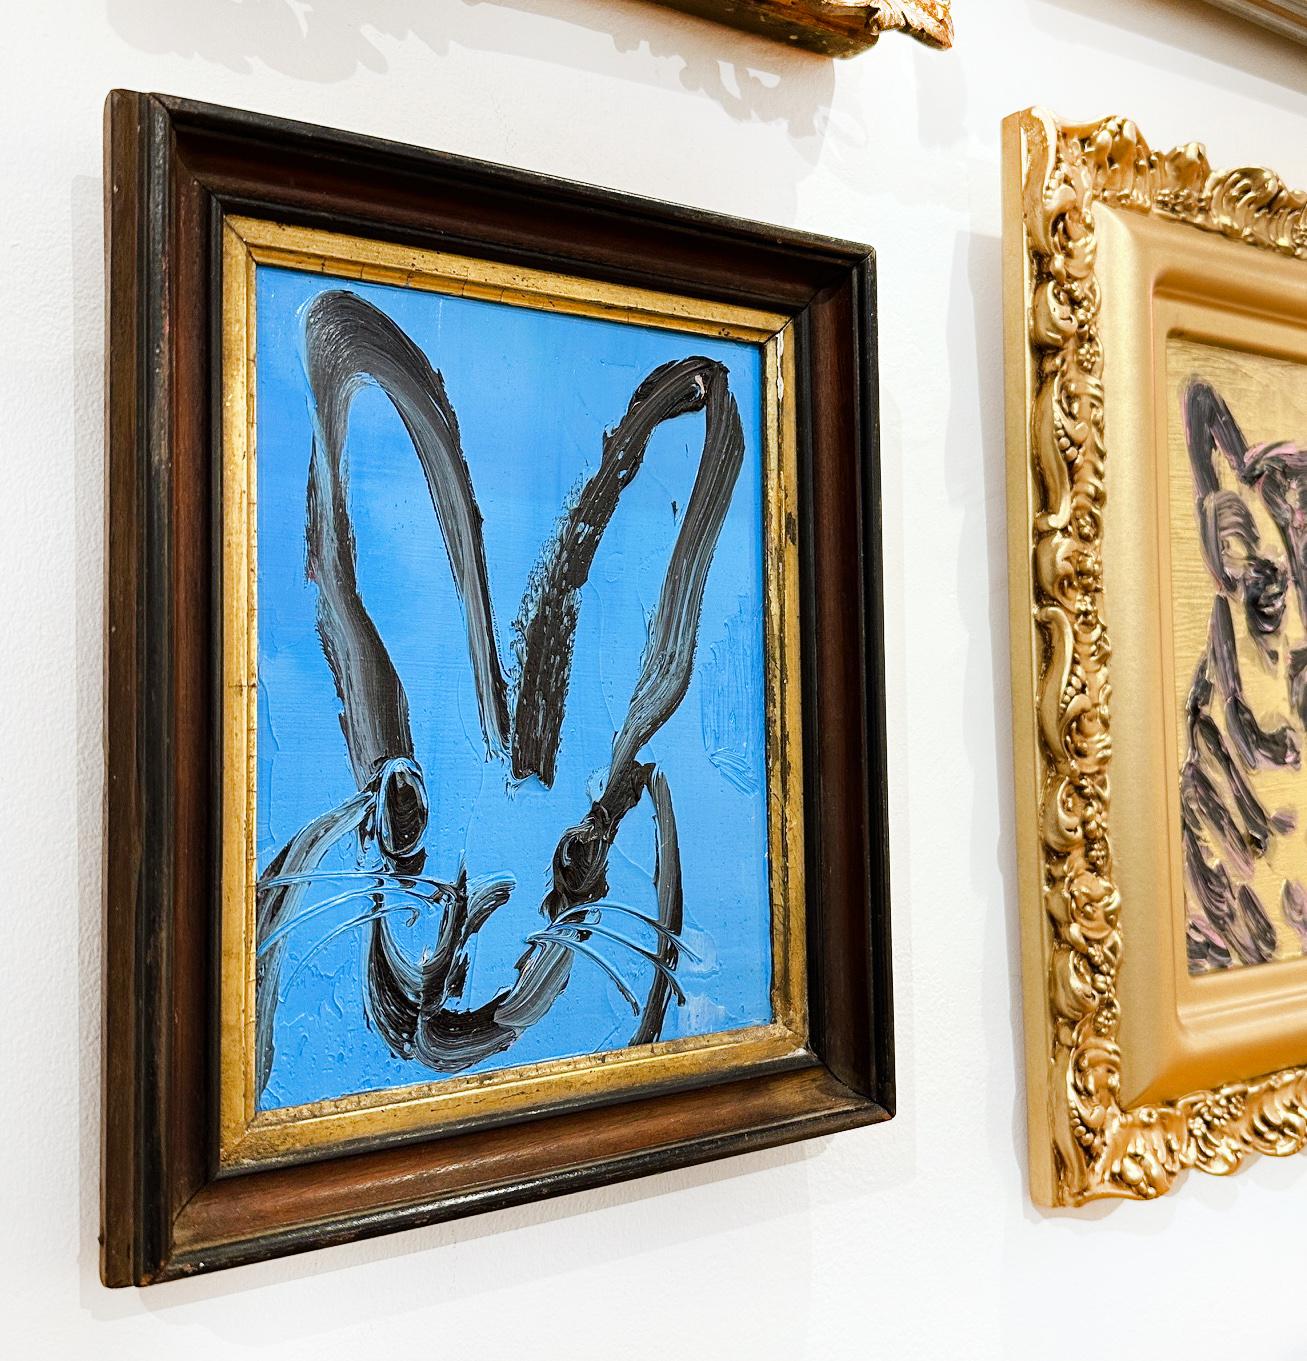 Künstler:  Slonem, Hunt
Titel:  Blauer Lauf
Serie:  Kaninchen
Datum:  2021
Medium:  Öl auf Holz
Ungerahmt Abmessungen:  8.5